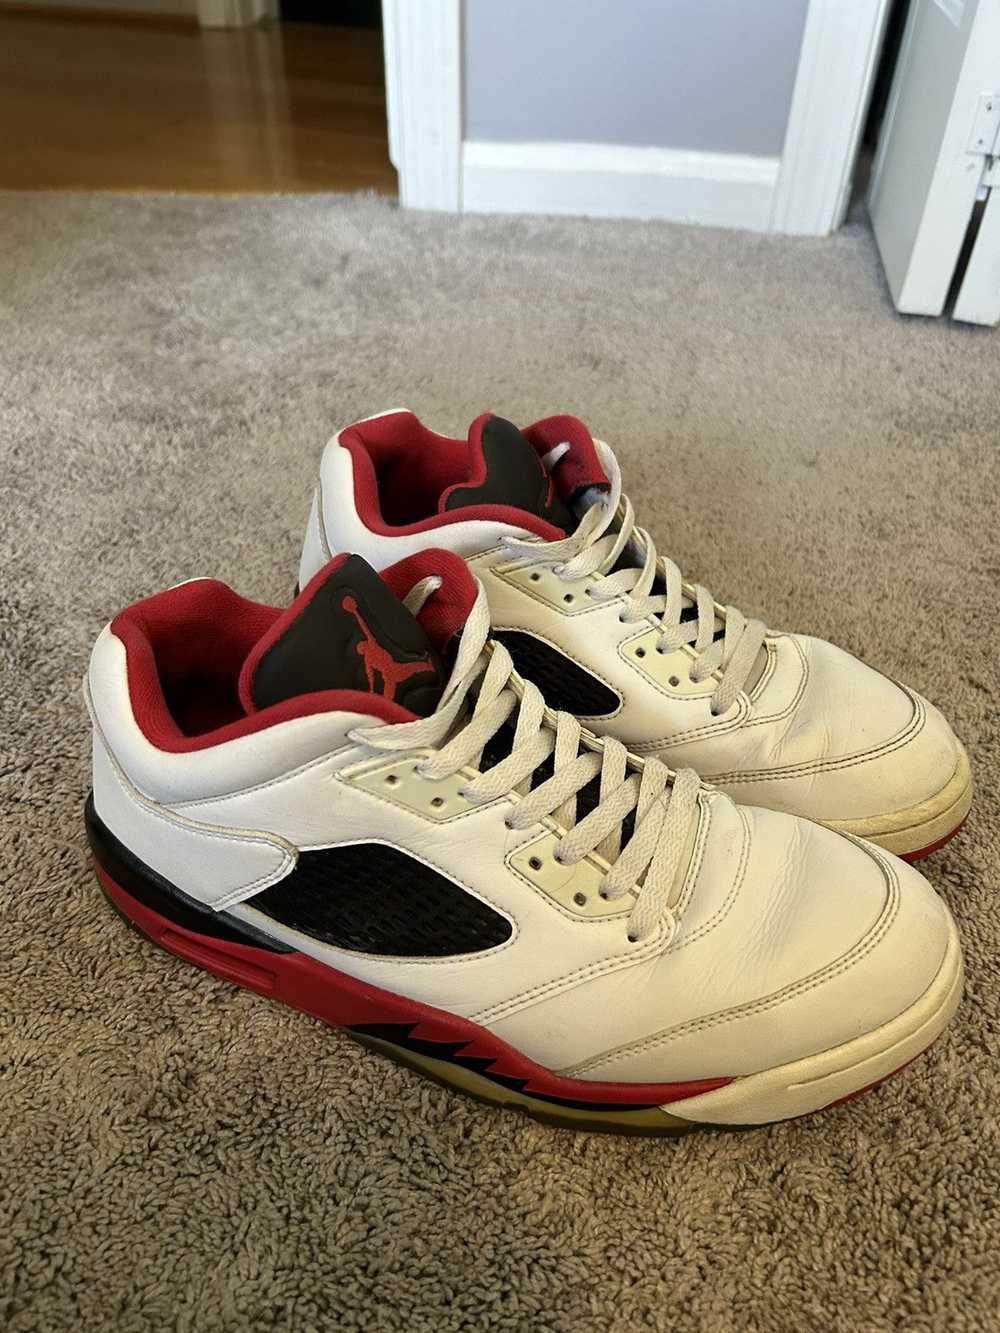 Jordan Brand Jordan 5 Fire Red Black Tongue - image 2